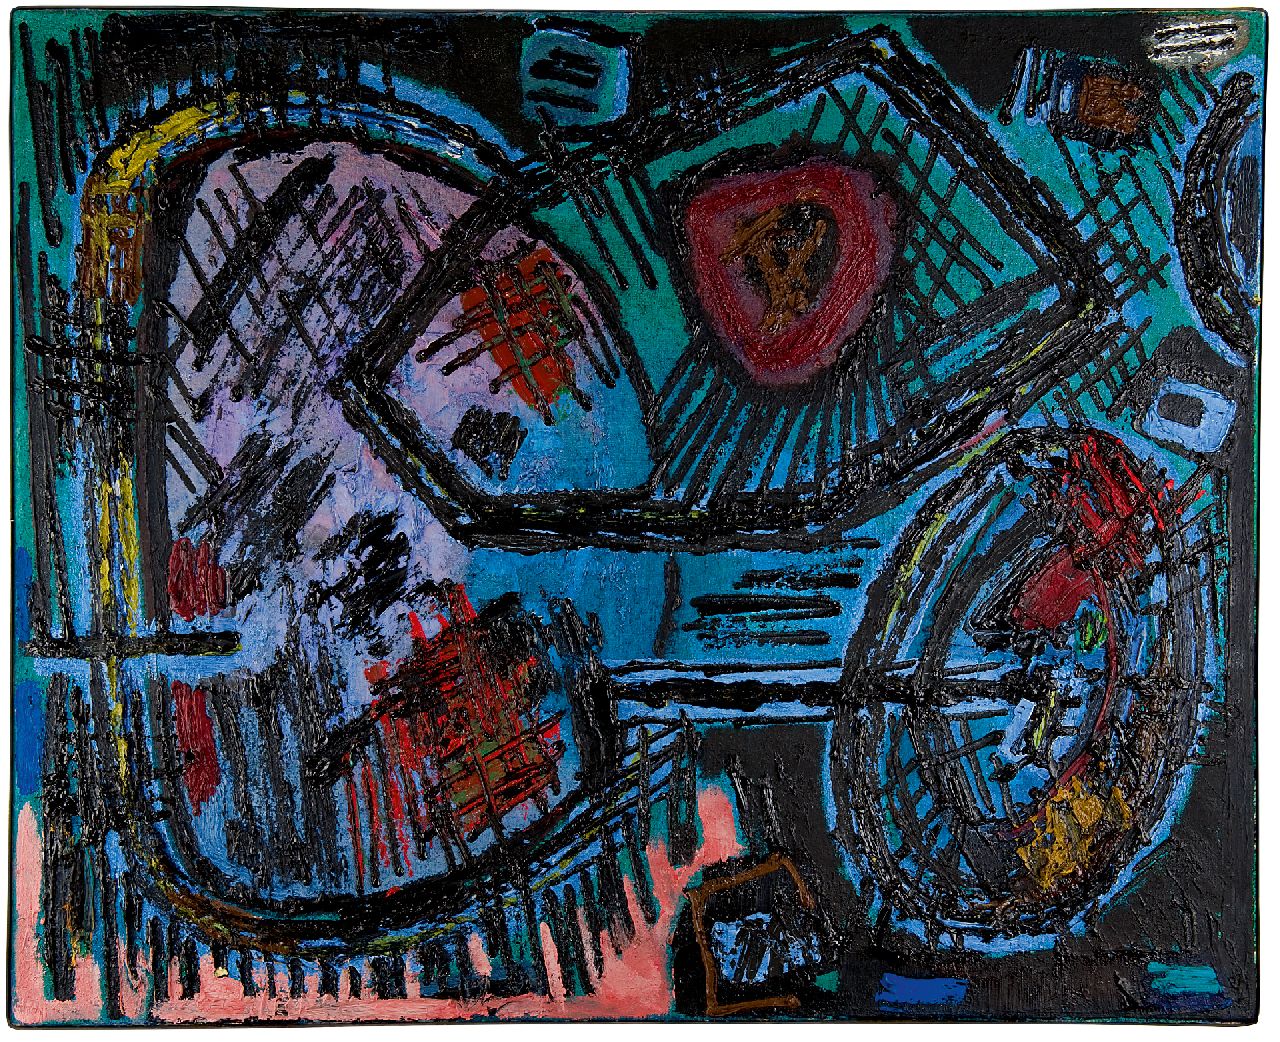 Hussem W.F.K.  | 'Willem' Frans Karel Hussem | Schilderijen te koop aangeboden | Compositie 1959, olieverf op doek 80,4 x 100,2 cm, gesigneerd verso en verso gedateerd '59